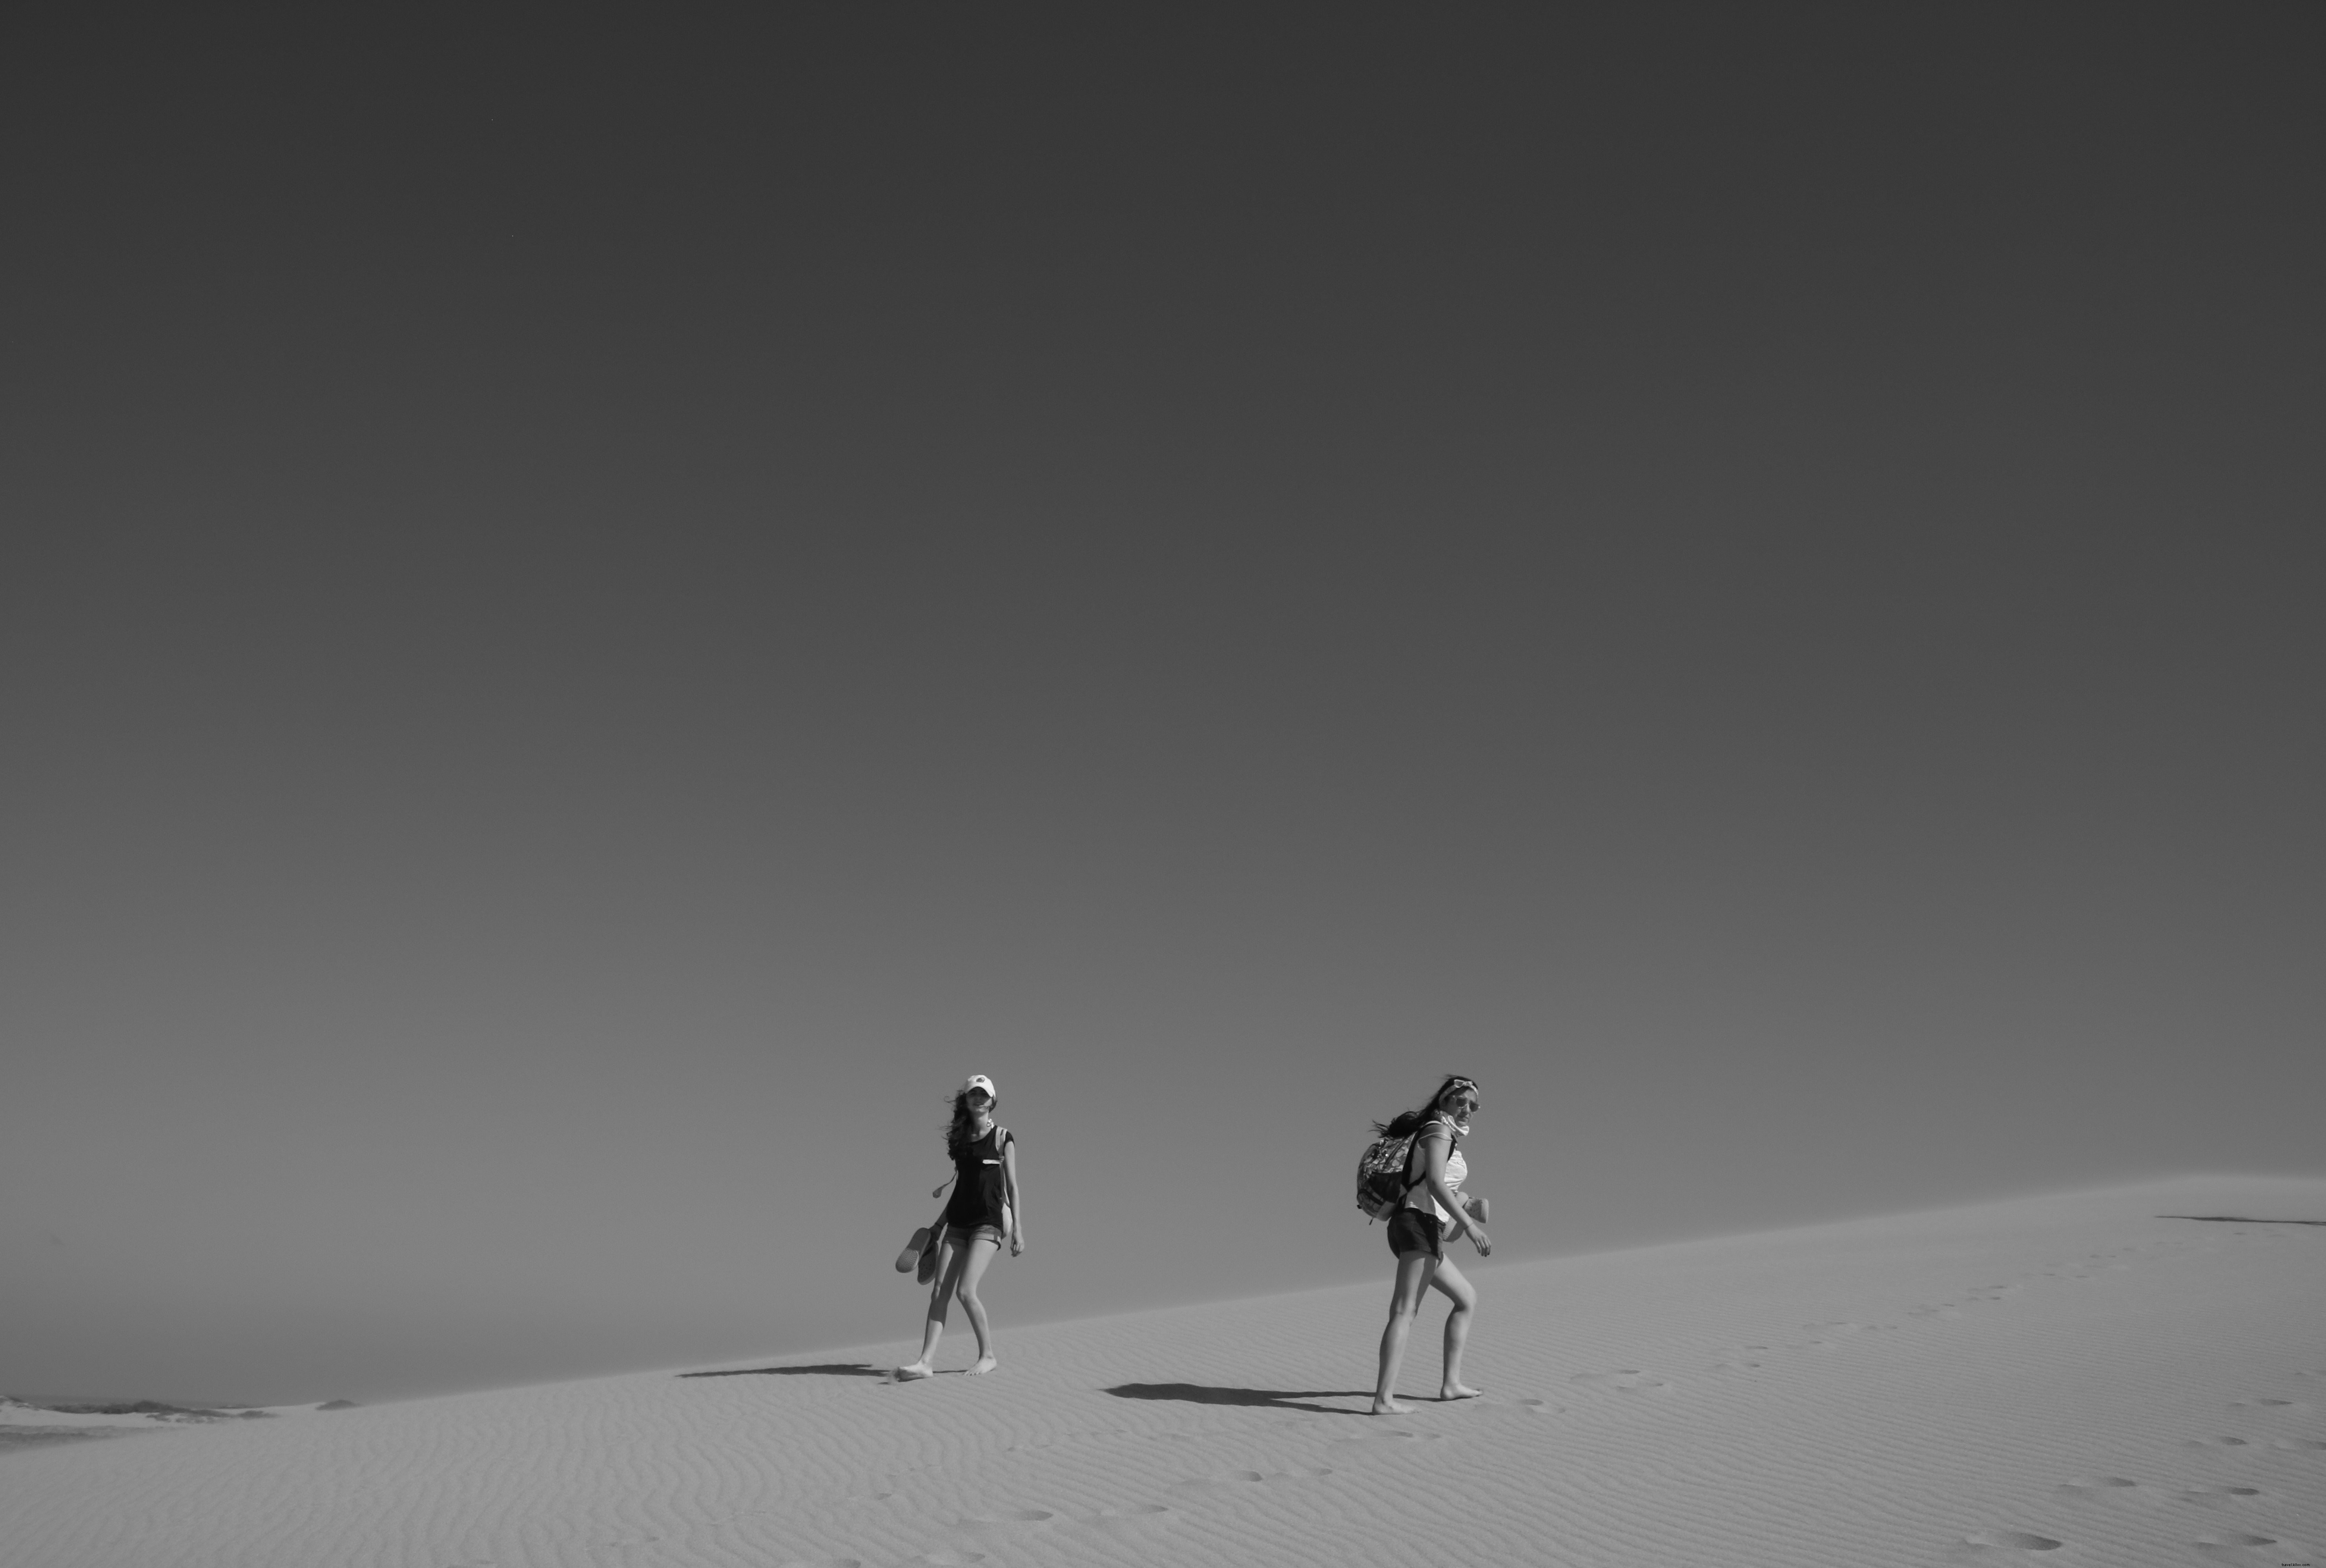 Gente caminando en el desierto en foto en blanco y negro 